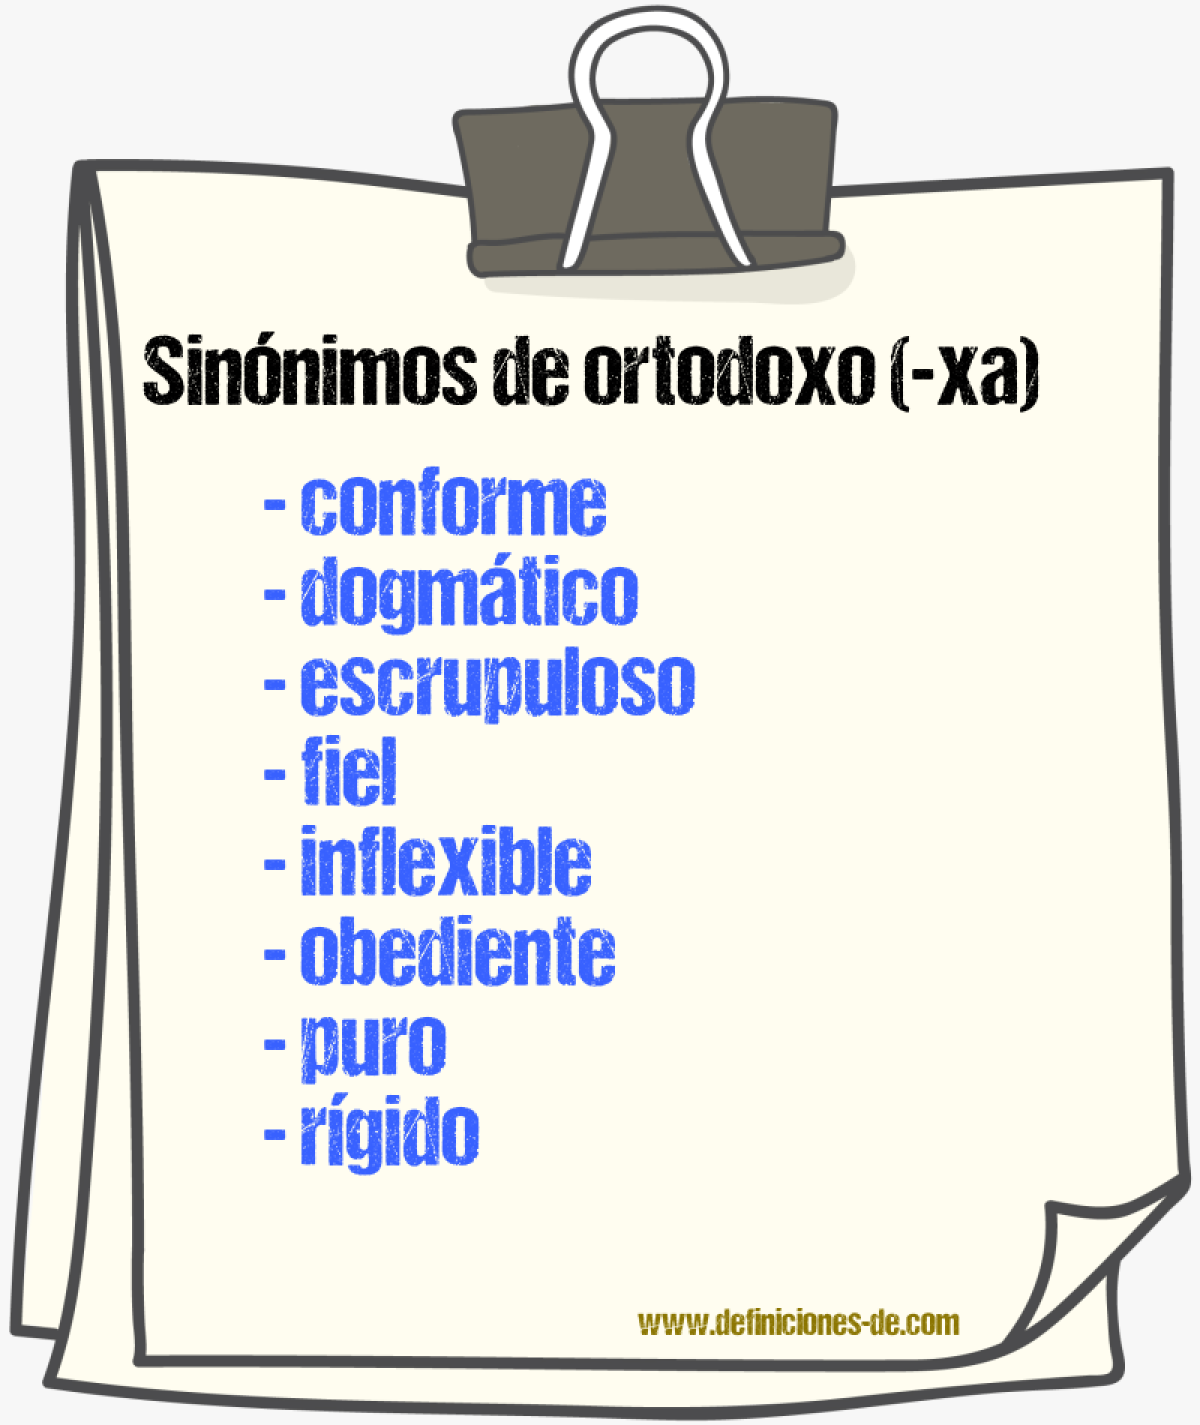 Sinónimos de ortodoxo